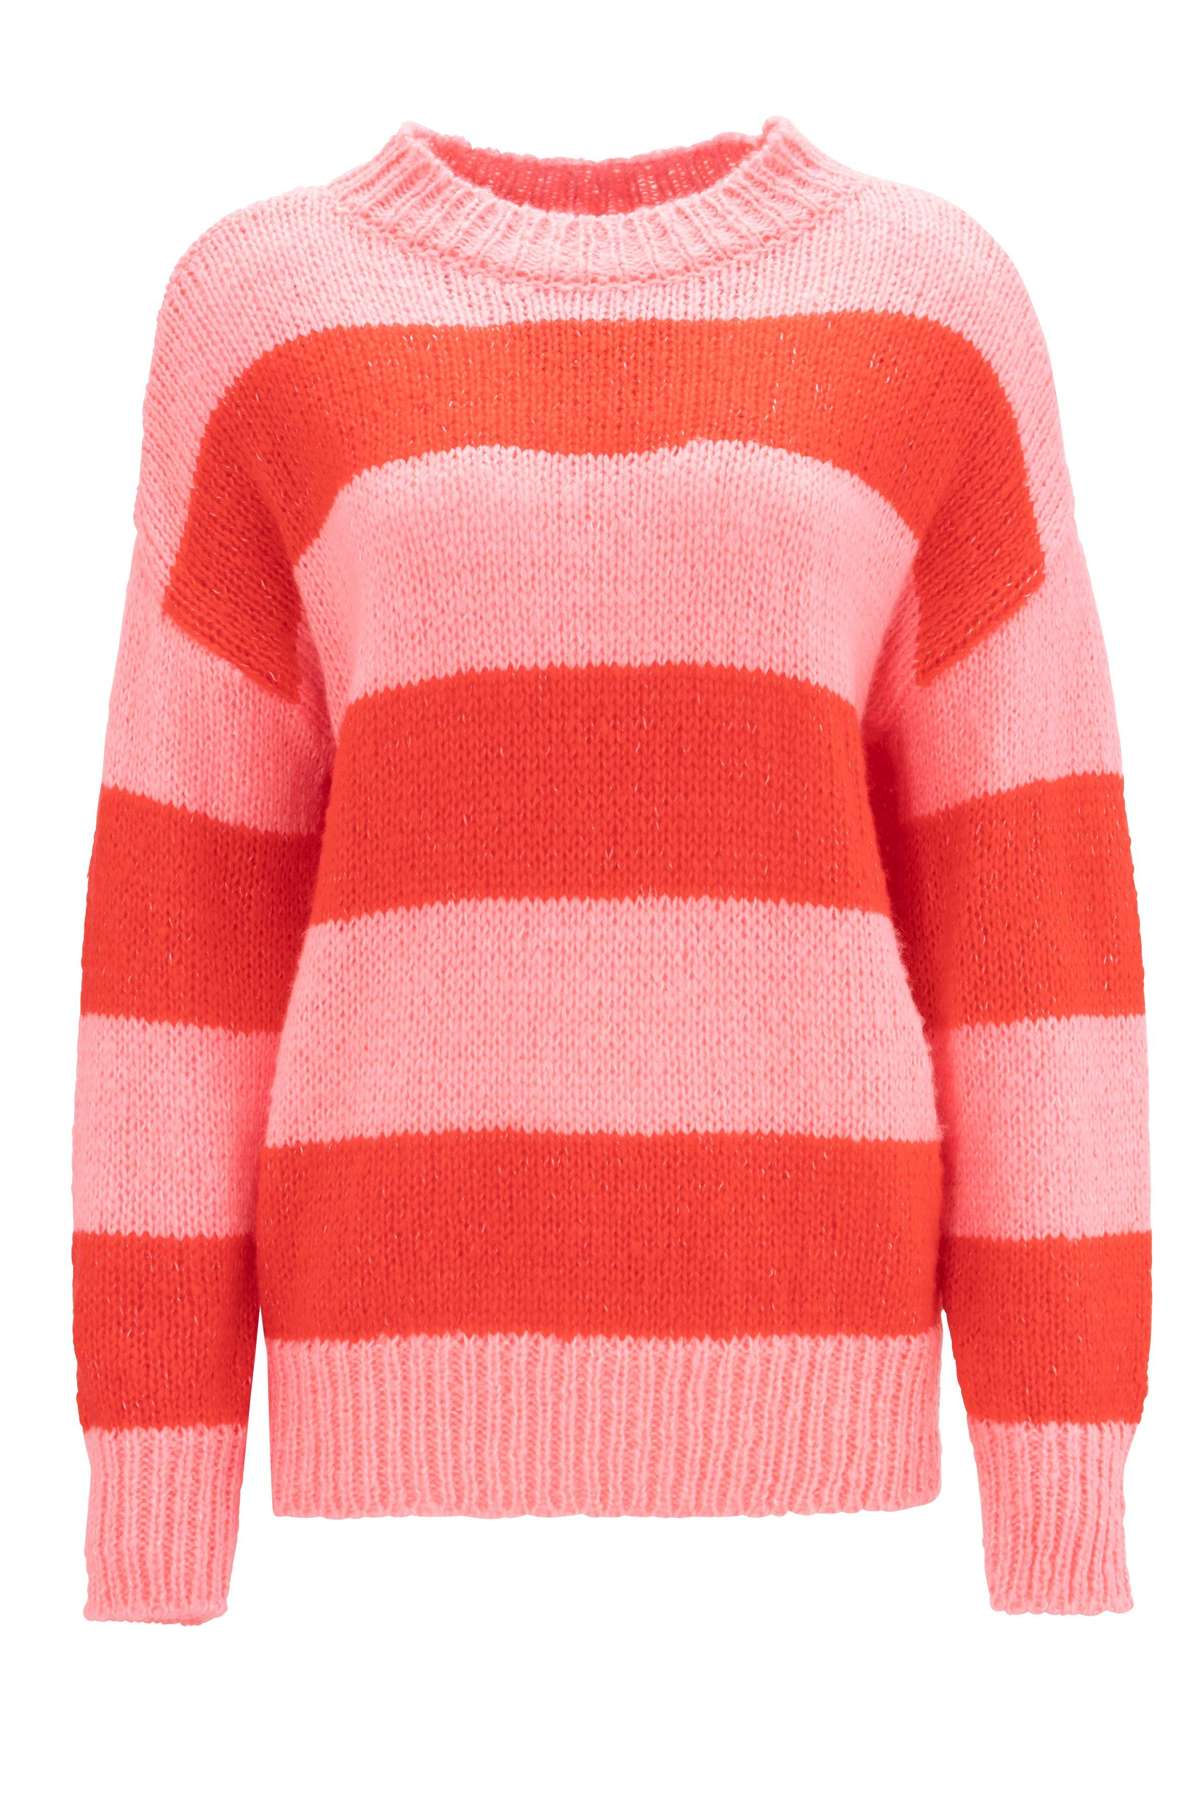 Вязаный свитер модного полосатого дизайна.